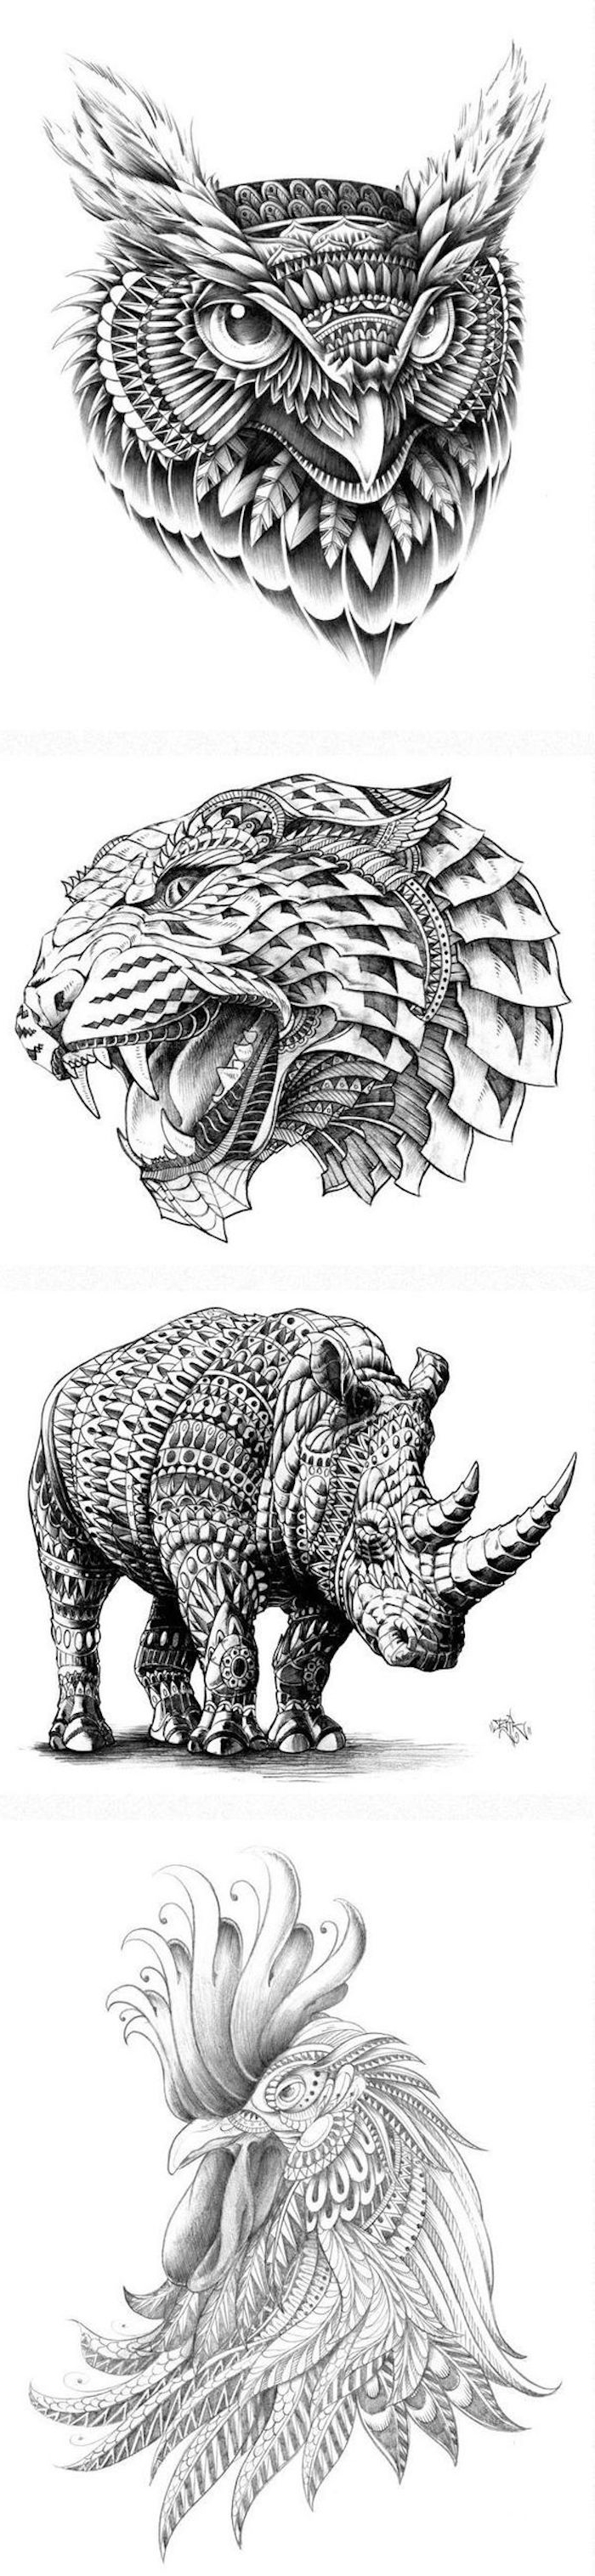 Tukaj boste našli štiri ideje za velike črne tetovaže - uh, leopard, nosorož in petelin